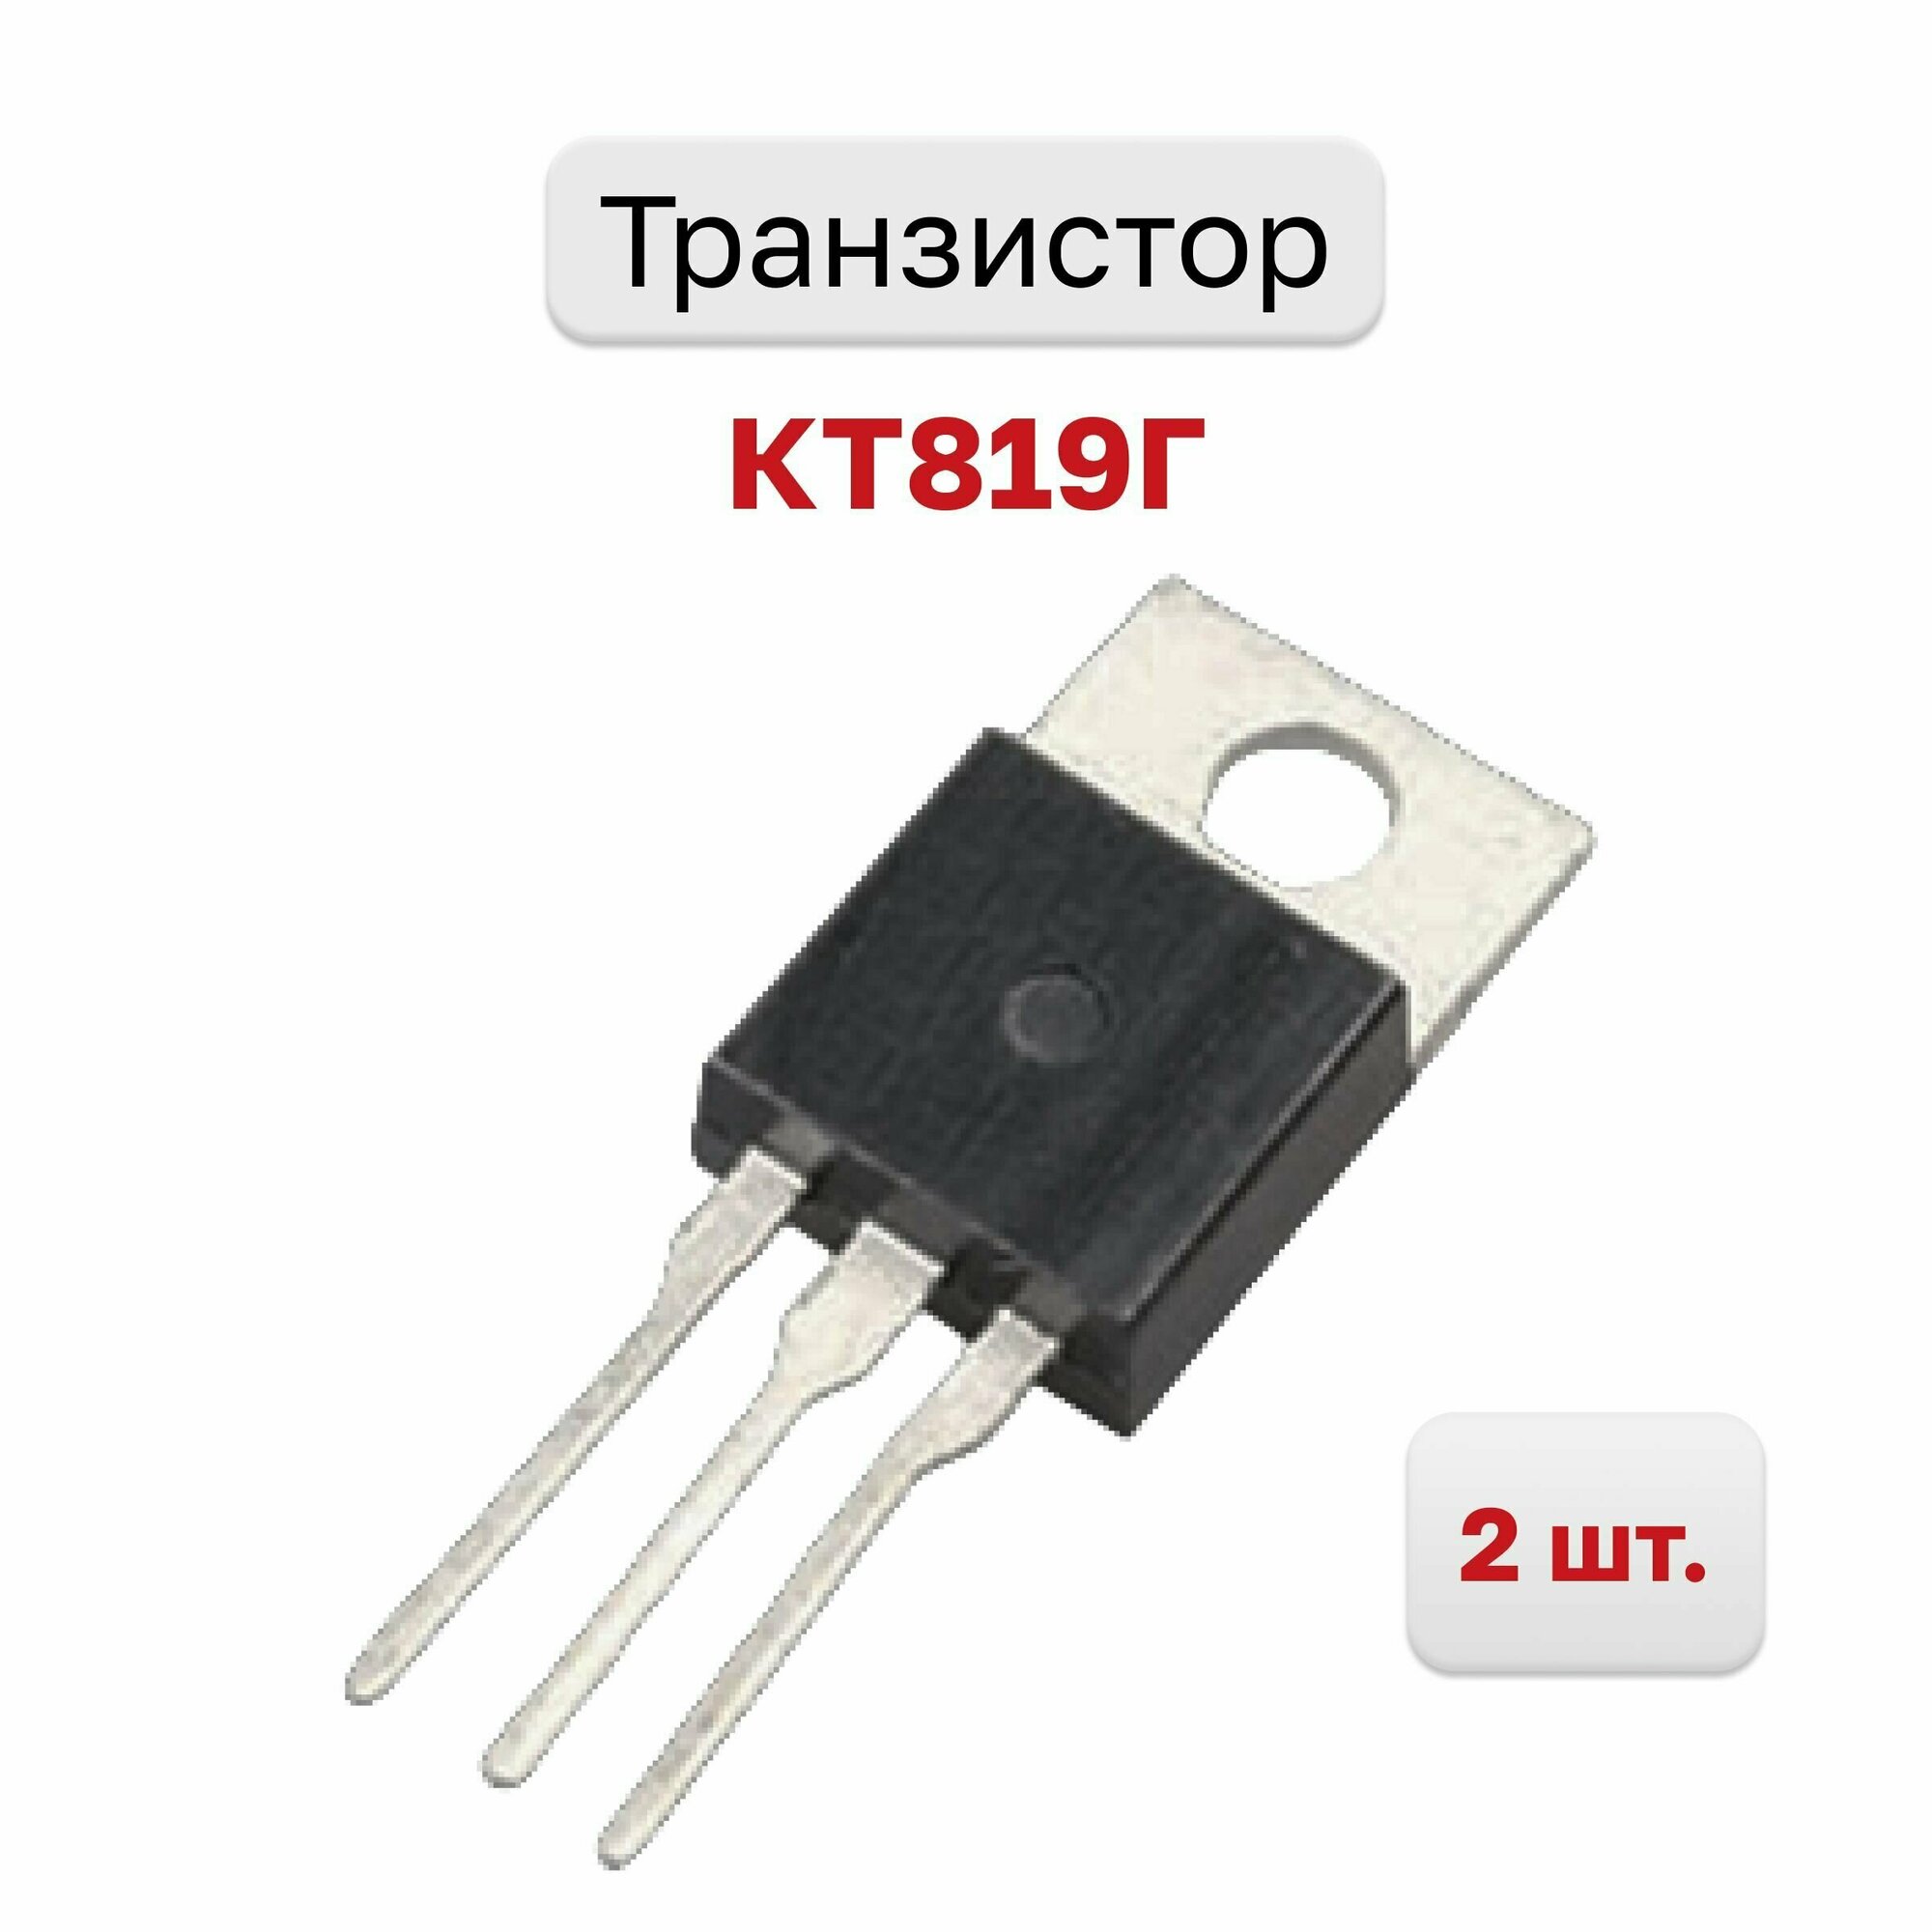 Транзистор КТ819Г, 2 шт.